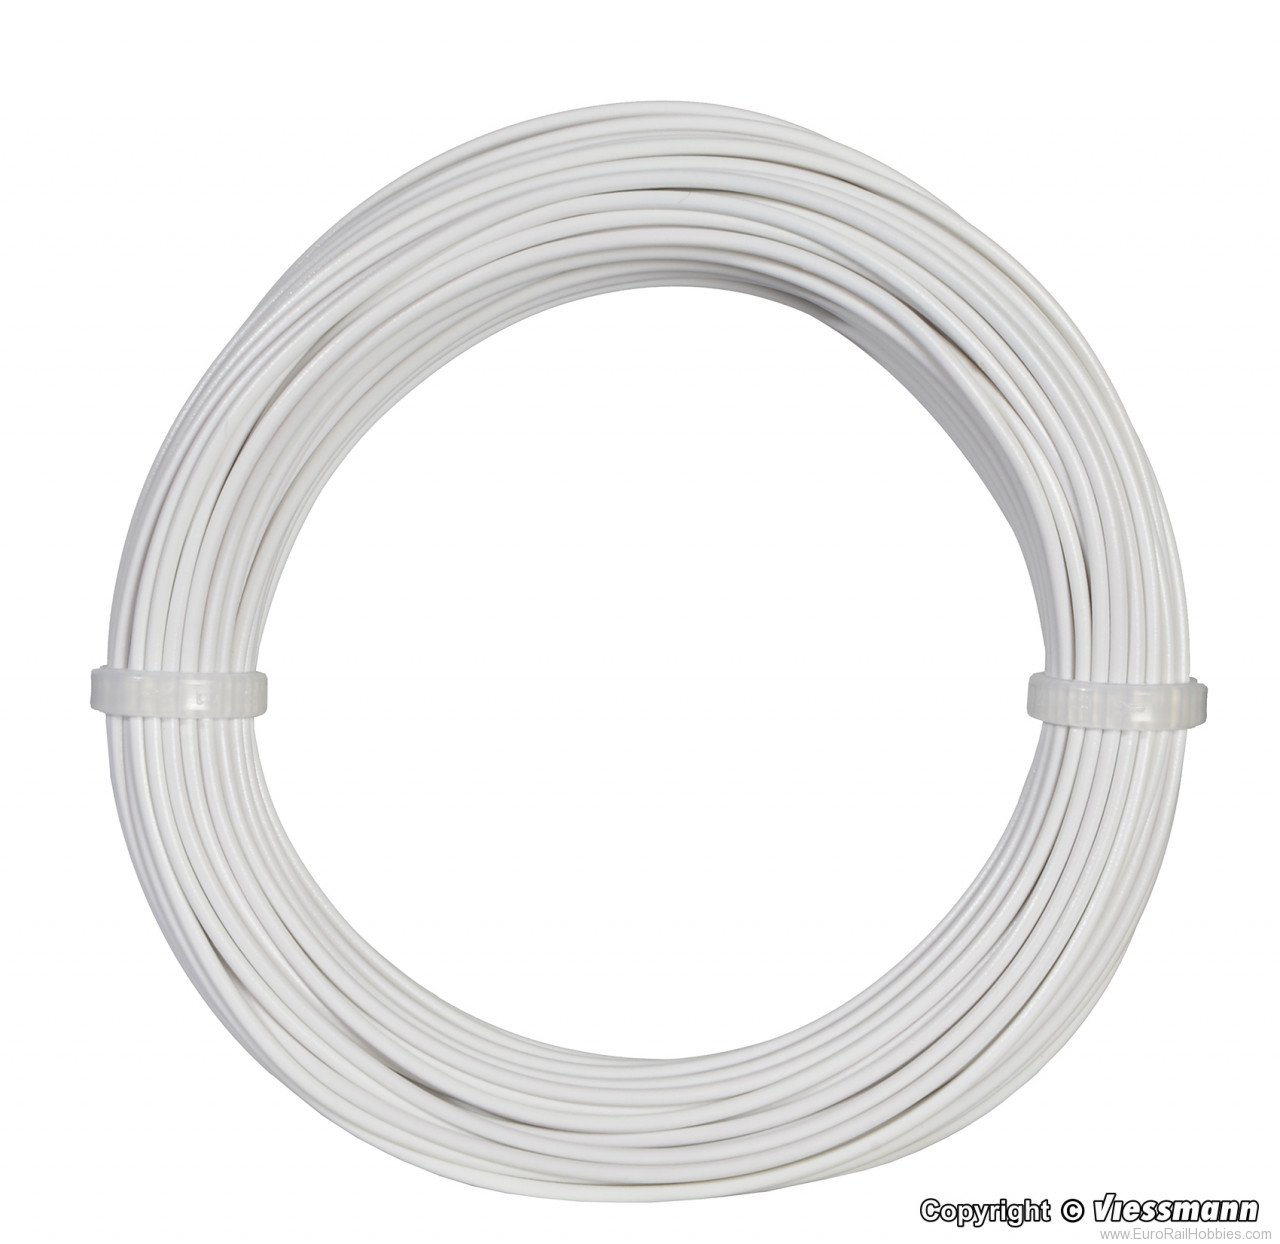 Viessmann 6862 Wire,0,14 mm dia., white, 10 m